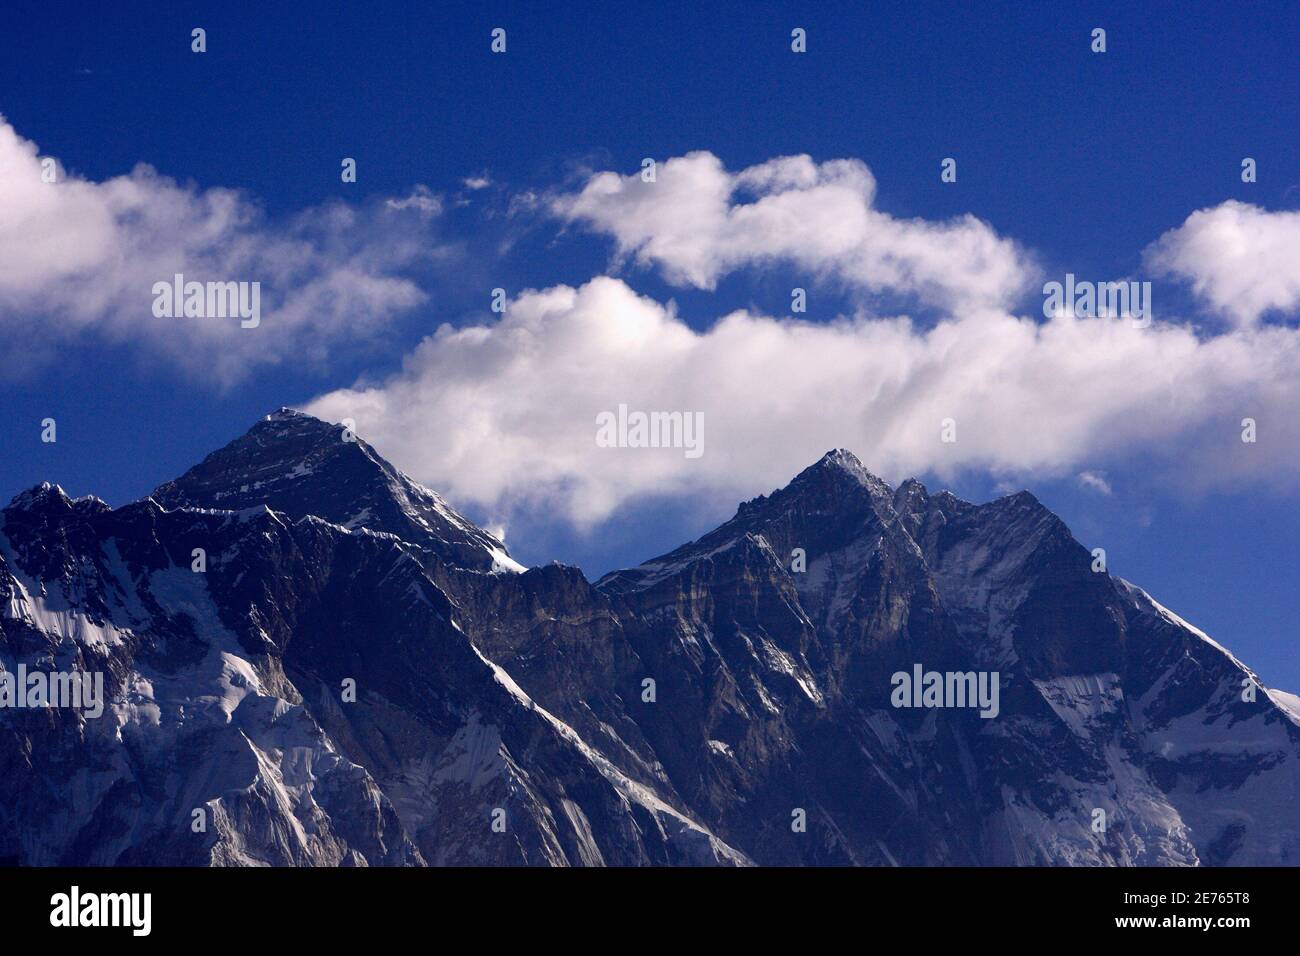 Wolkenanstieg hinter dem Mount Everest, dem höchsten Gipfel der Welt mit 8,848 Metern (29,029 ft), von Kongde bei Namche Bazar am 5. März 2009 aus gesehen. REUTERS/Gopal Chitrakar (NEPAL) Stockfoto